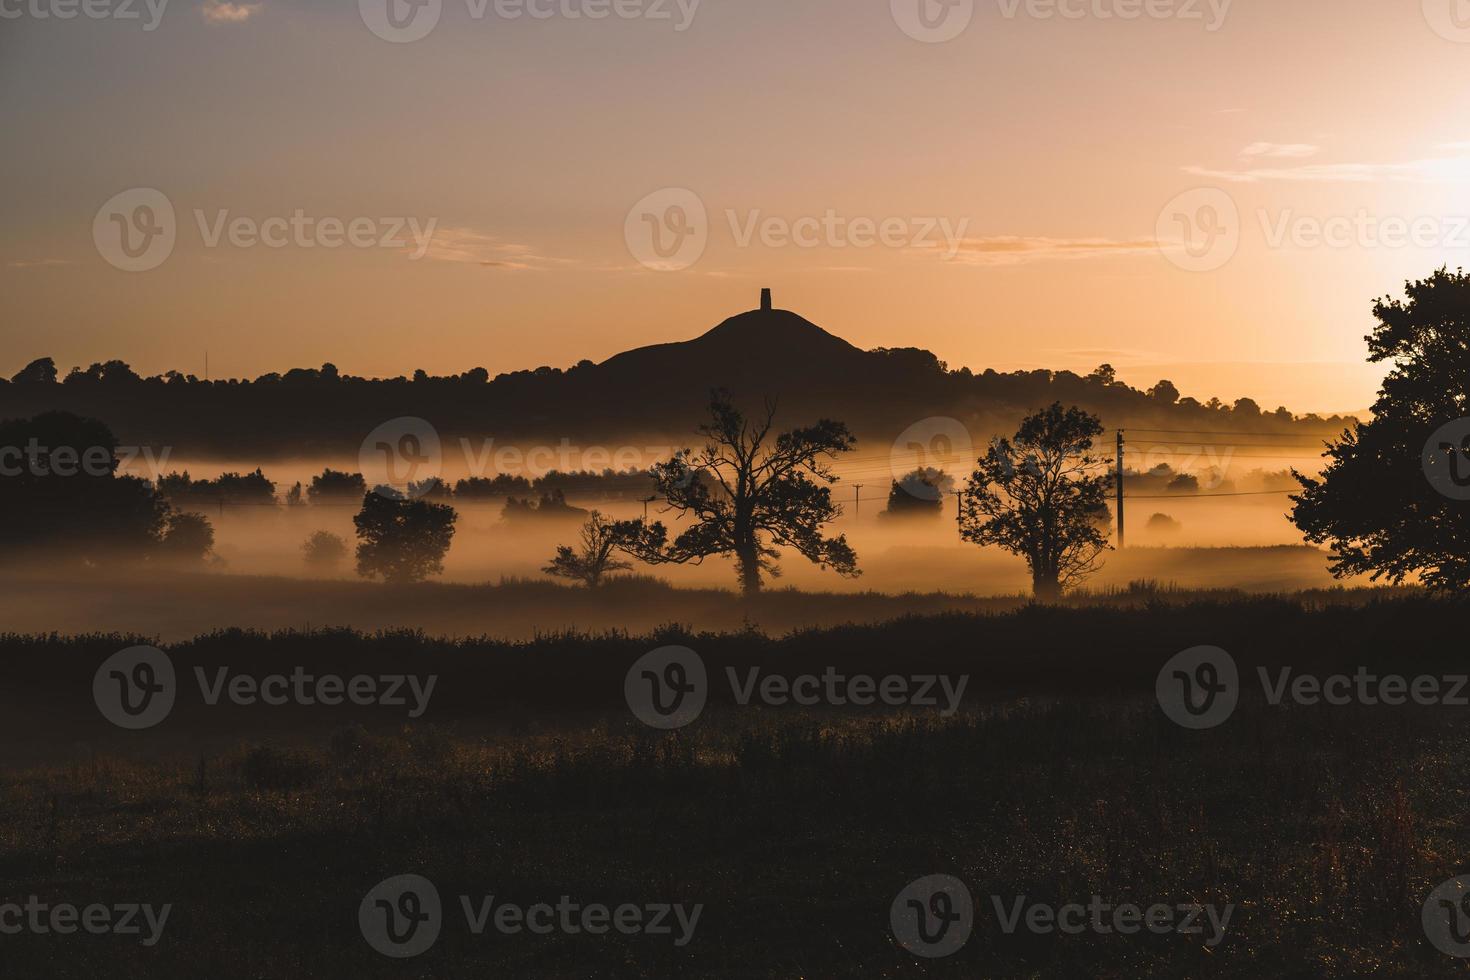 tor de glastonbury ao nascer do sol, reino unido foto